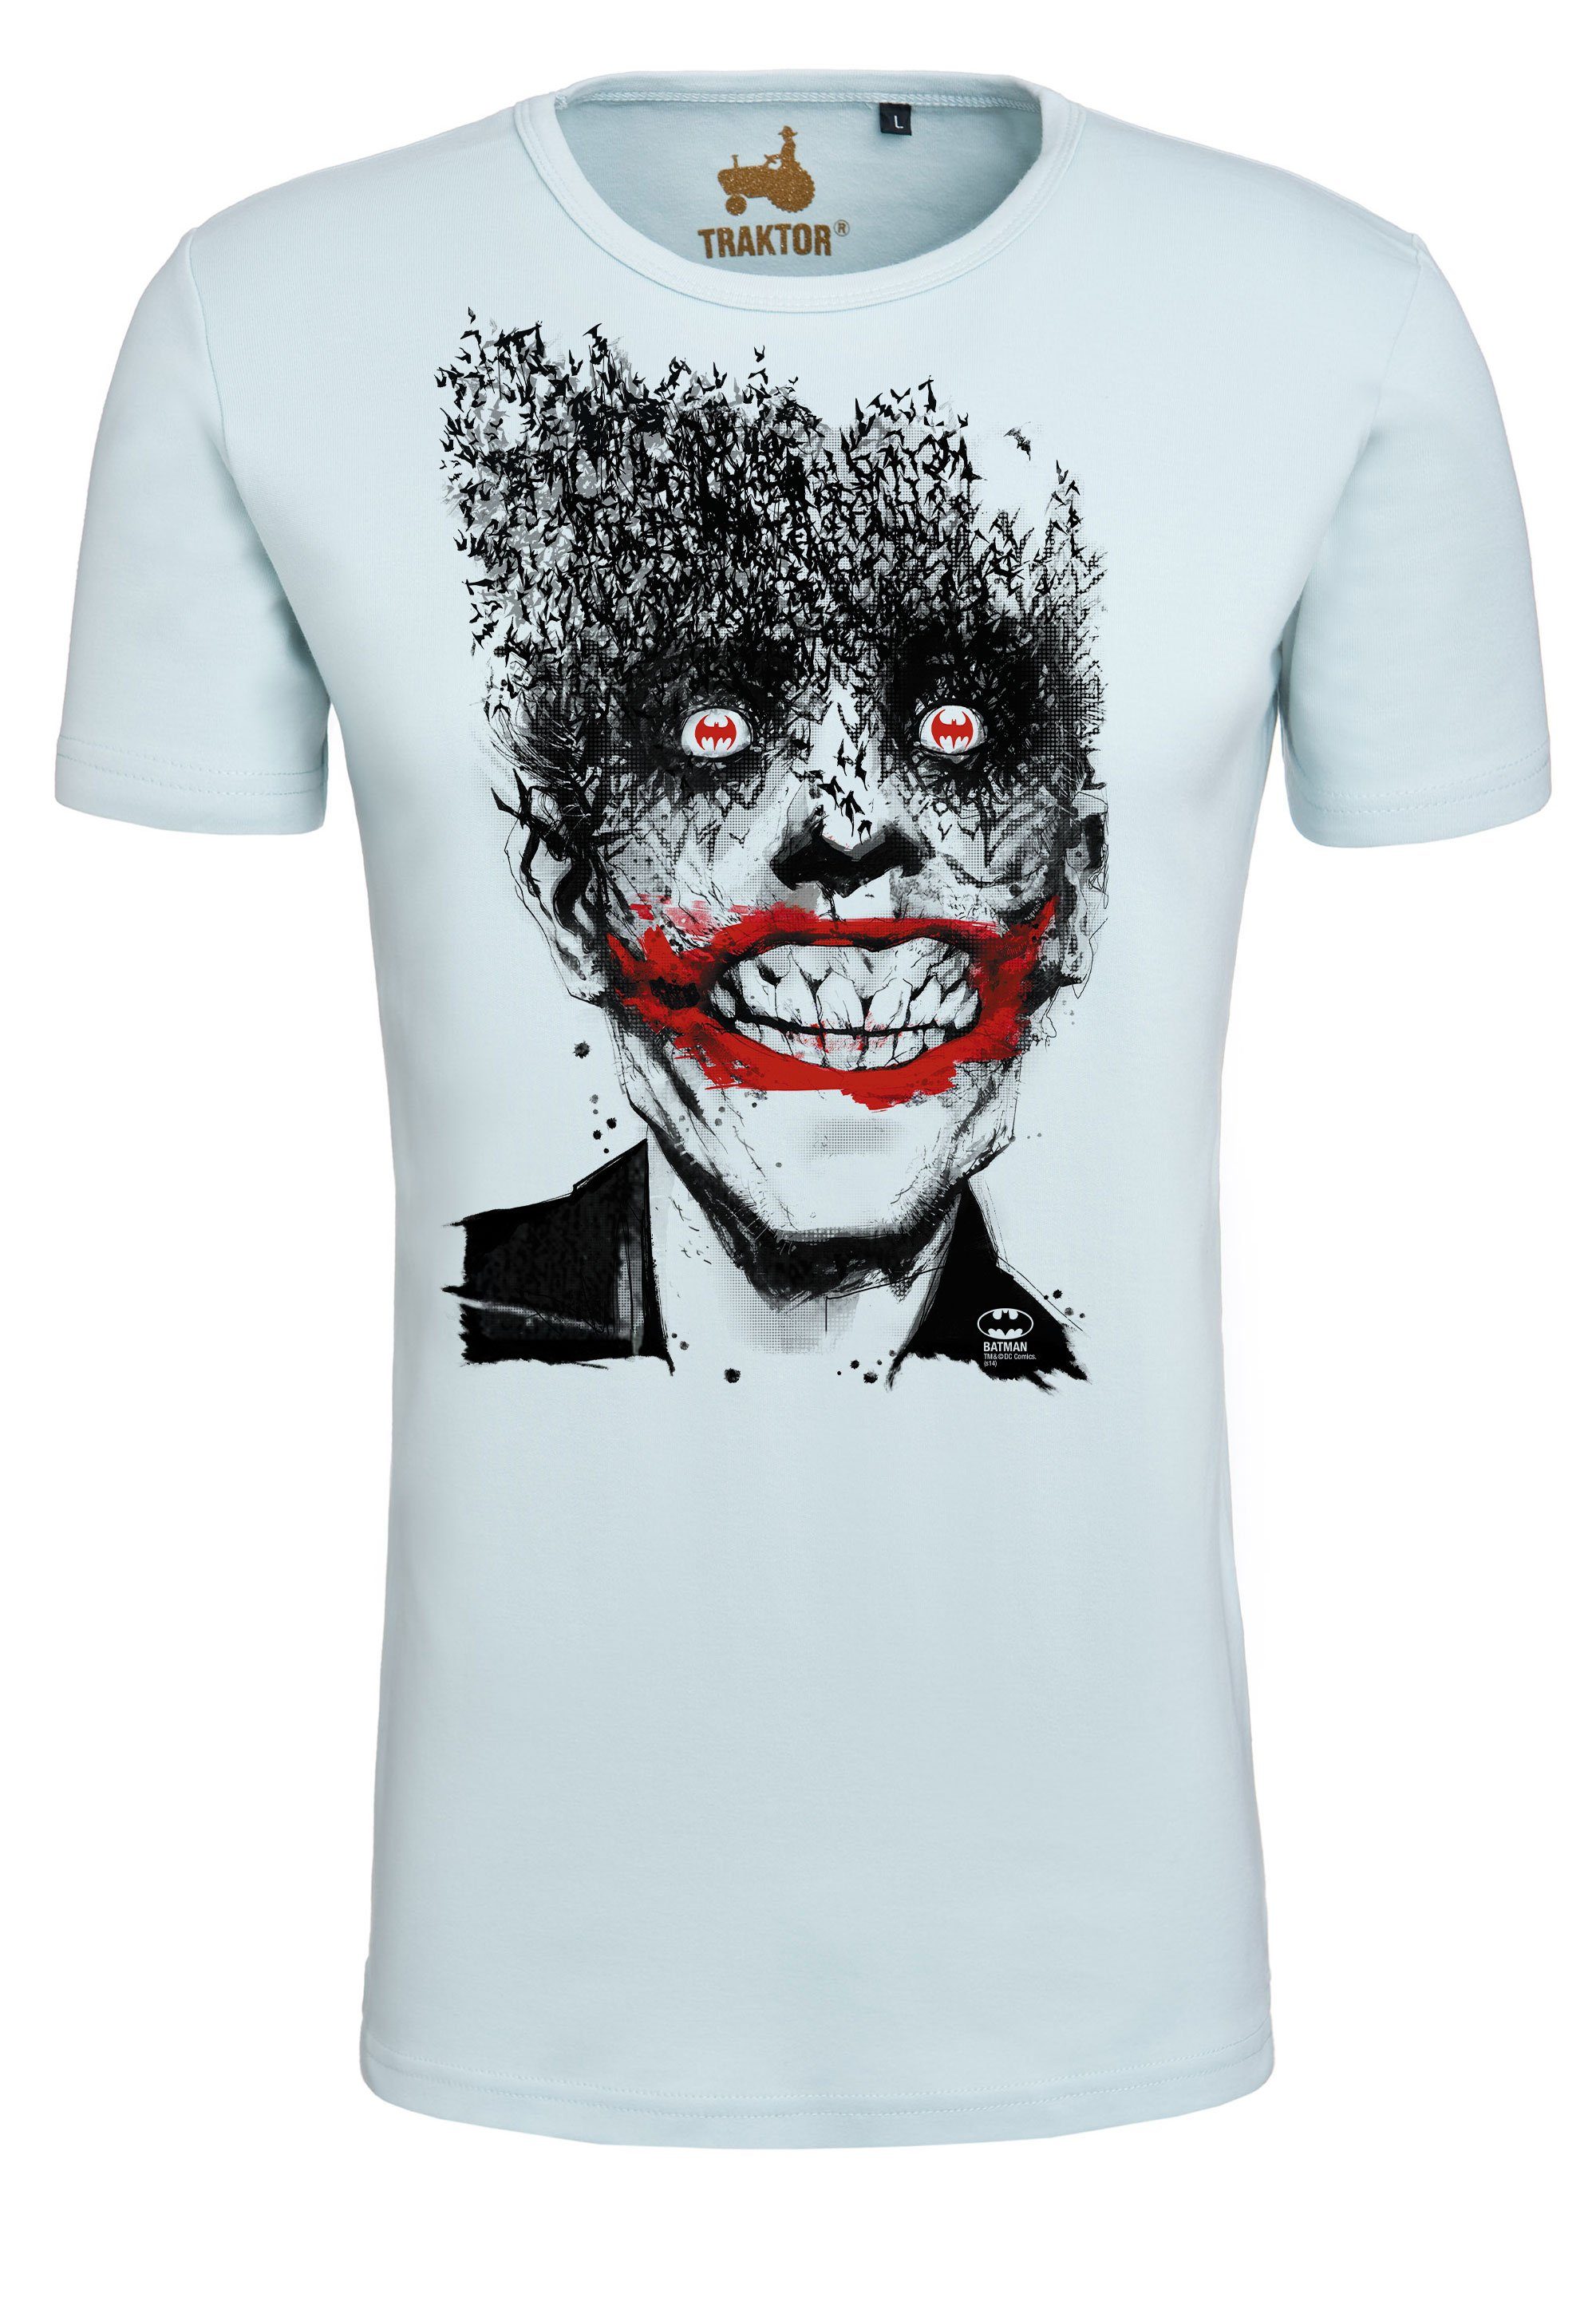 Bats Joker trendigem Superschurken-Print - LOGOSHIRT T-Shirt Batman mit